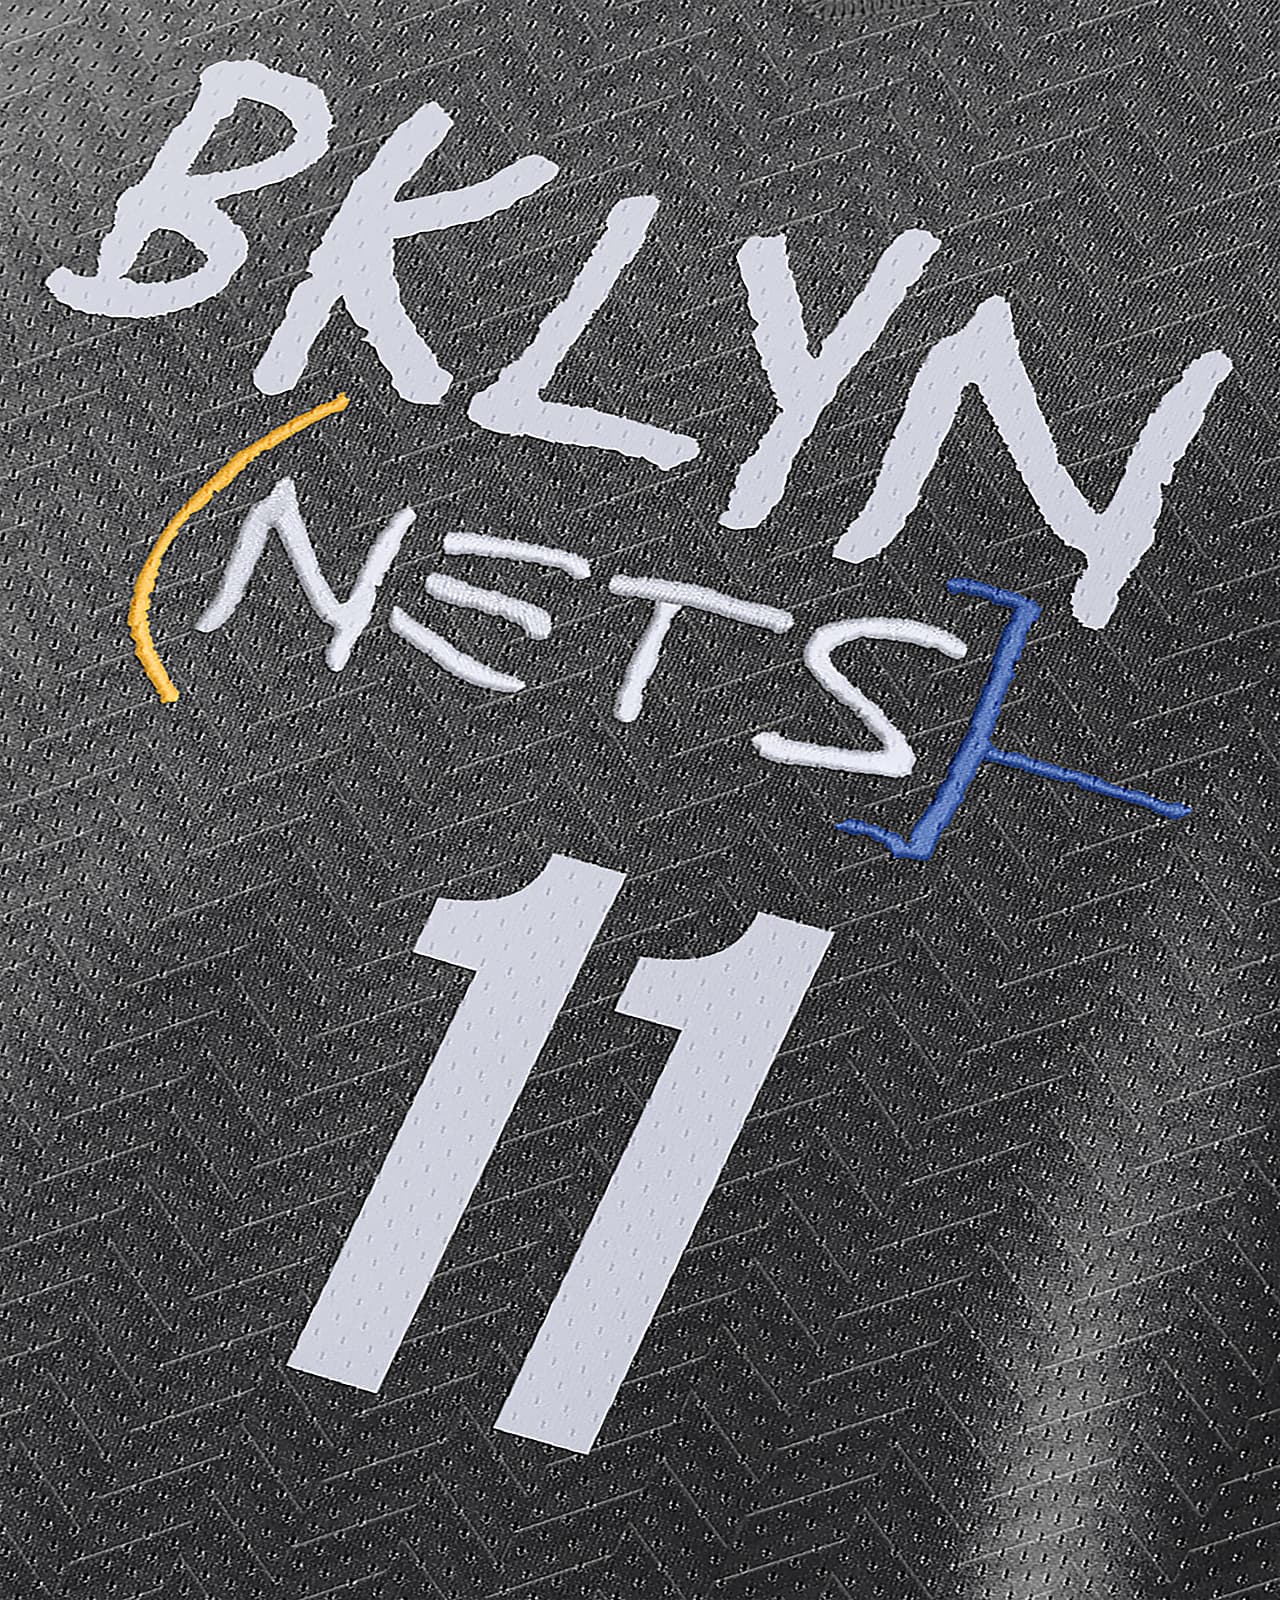 brooklyn nets nike city edition swingman jersey